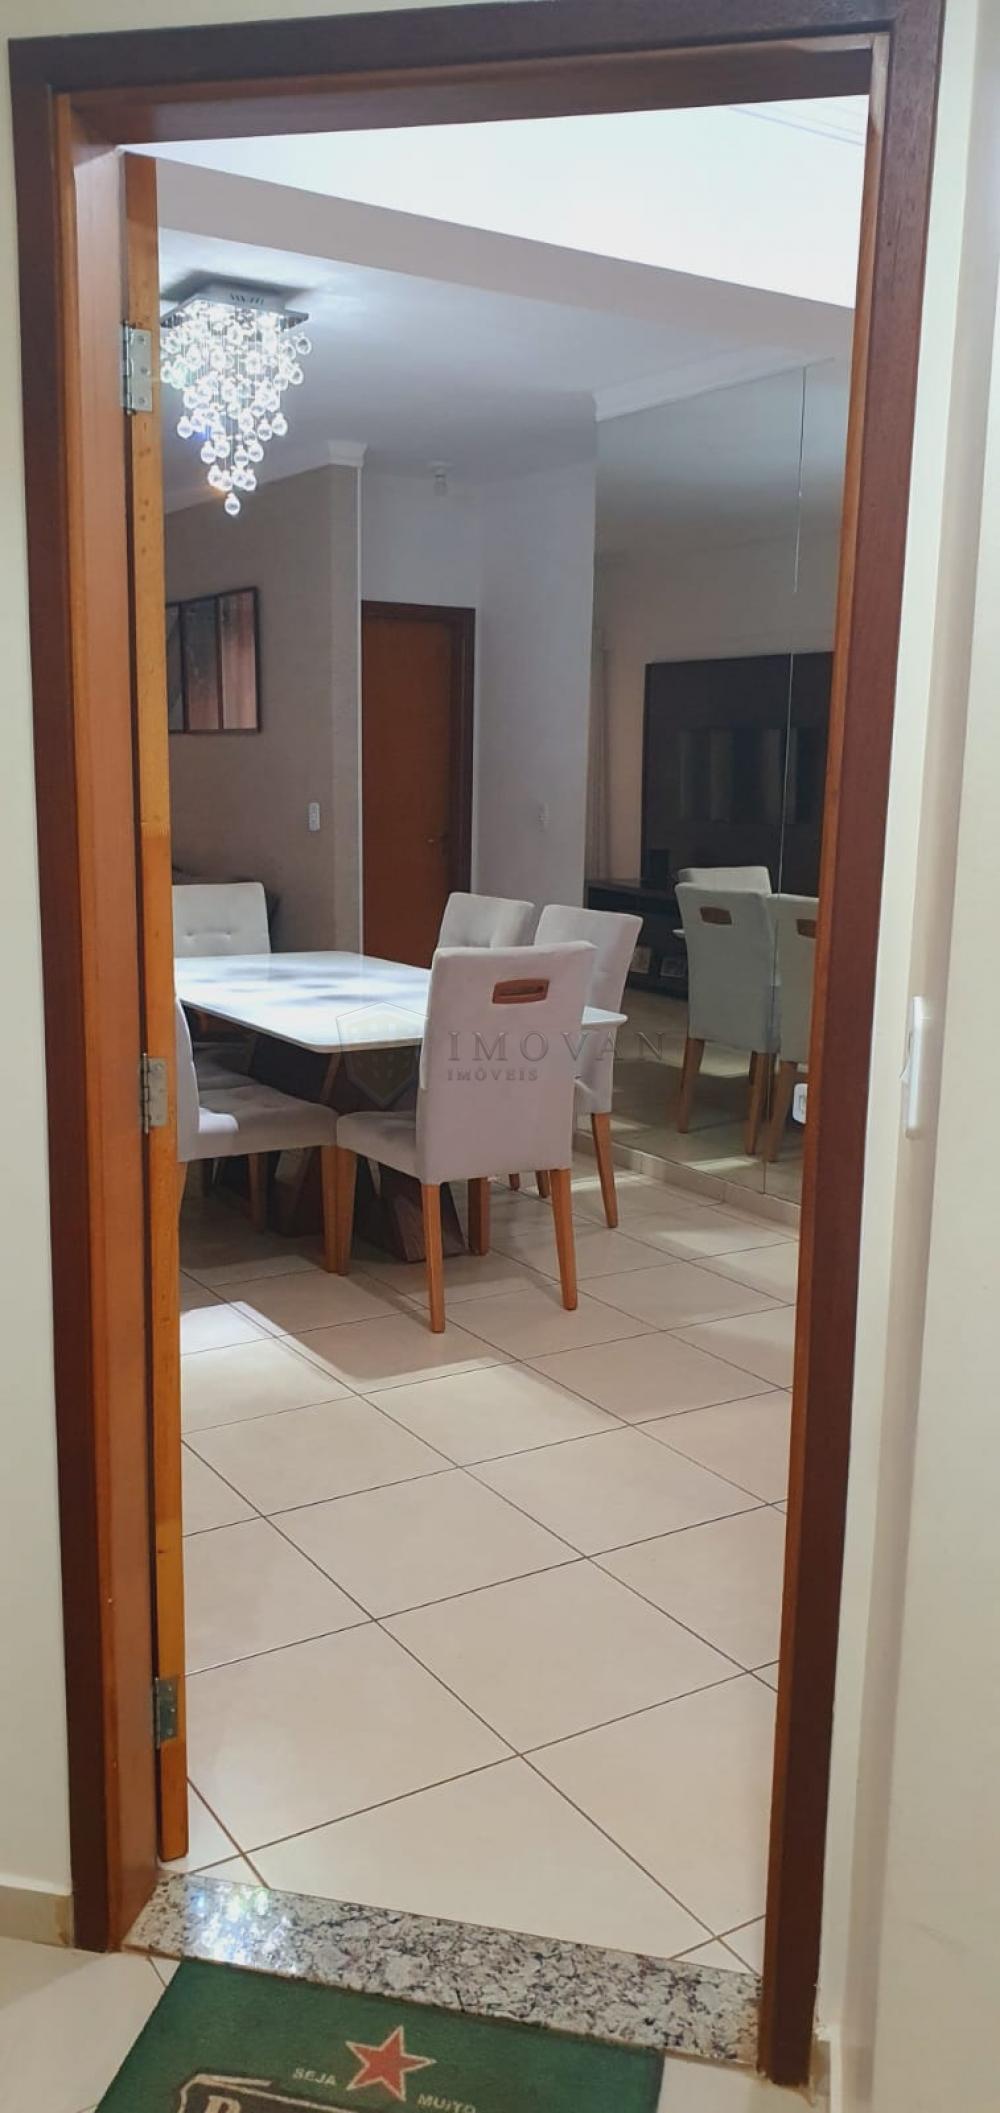 Comprar Apartamento / Padrão em Ribeirão Preto R$ 490.000,00 - Foto 6